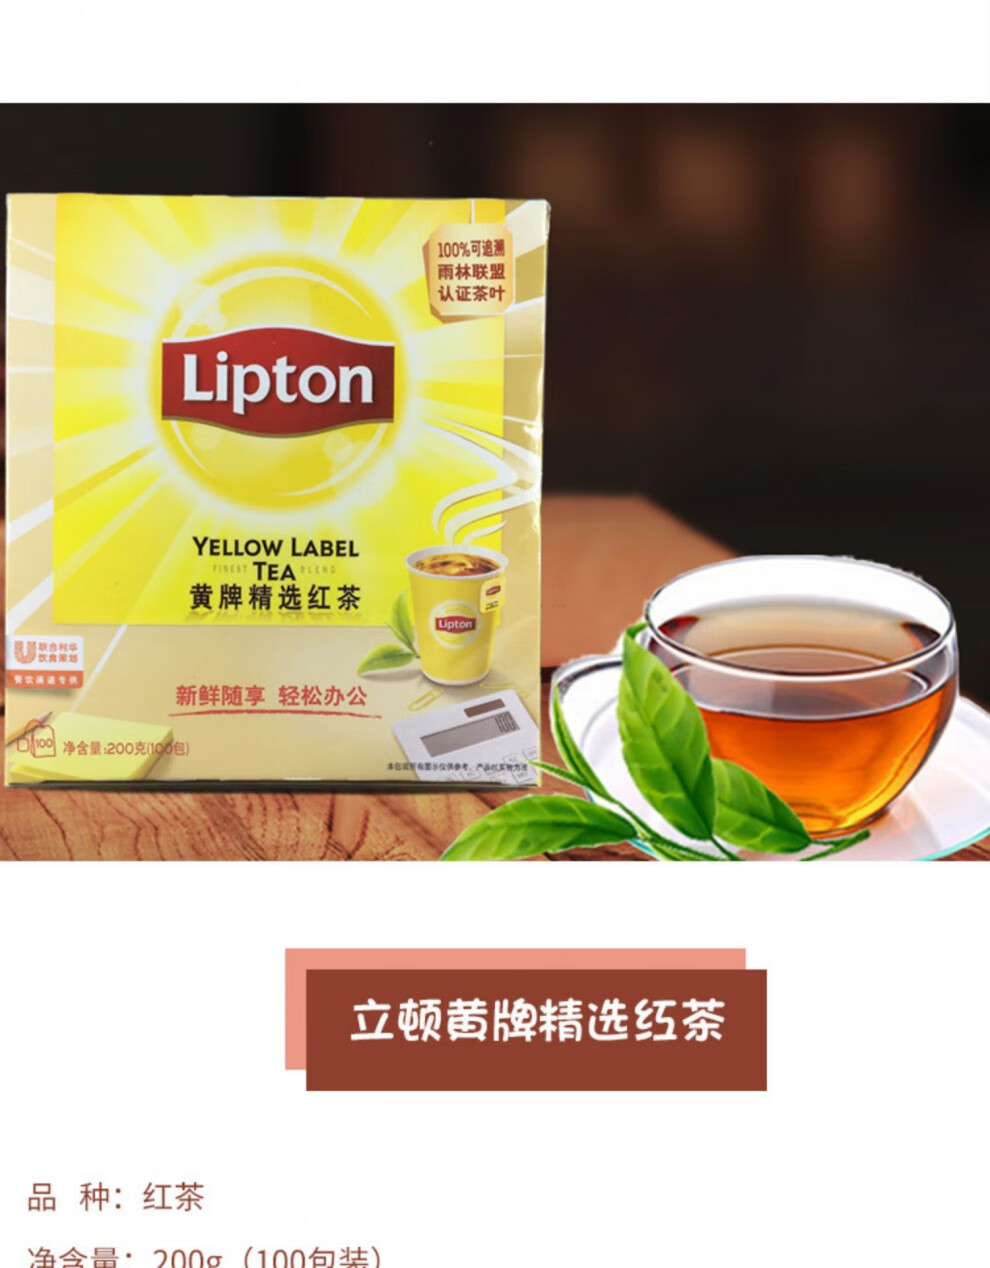 红茶黄牌精选红茶100包200g红茶茶叶袋泡茶袋装小包绿茶1盒100包